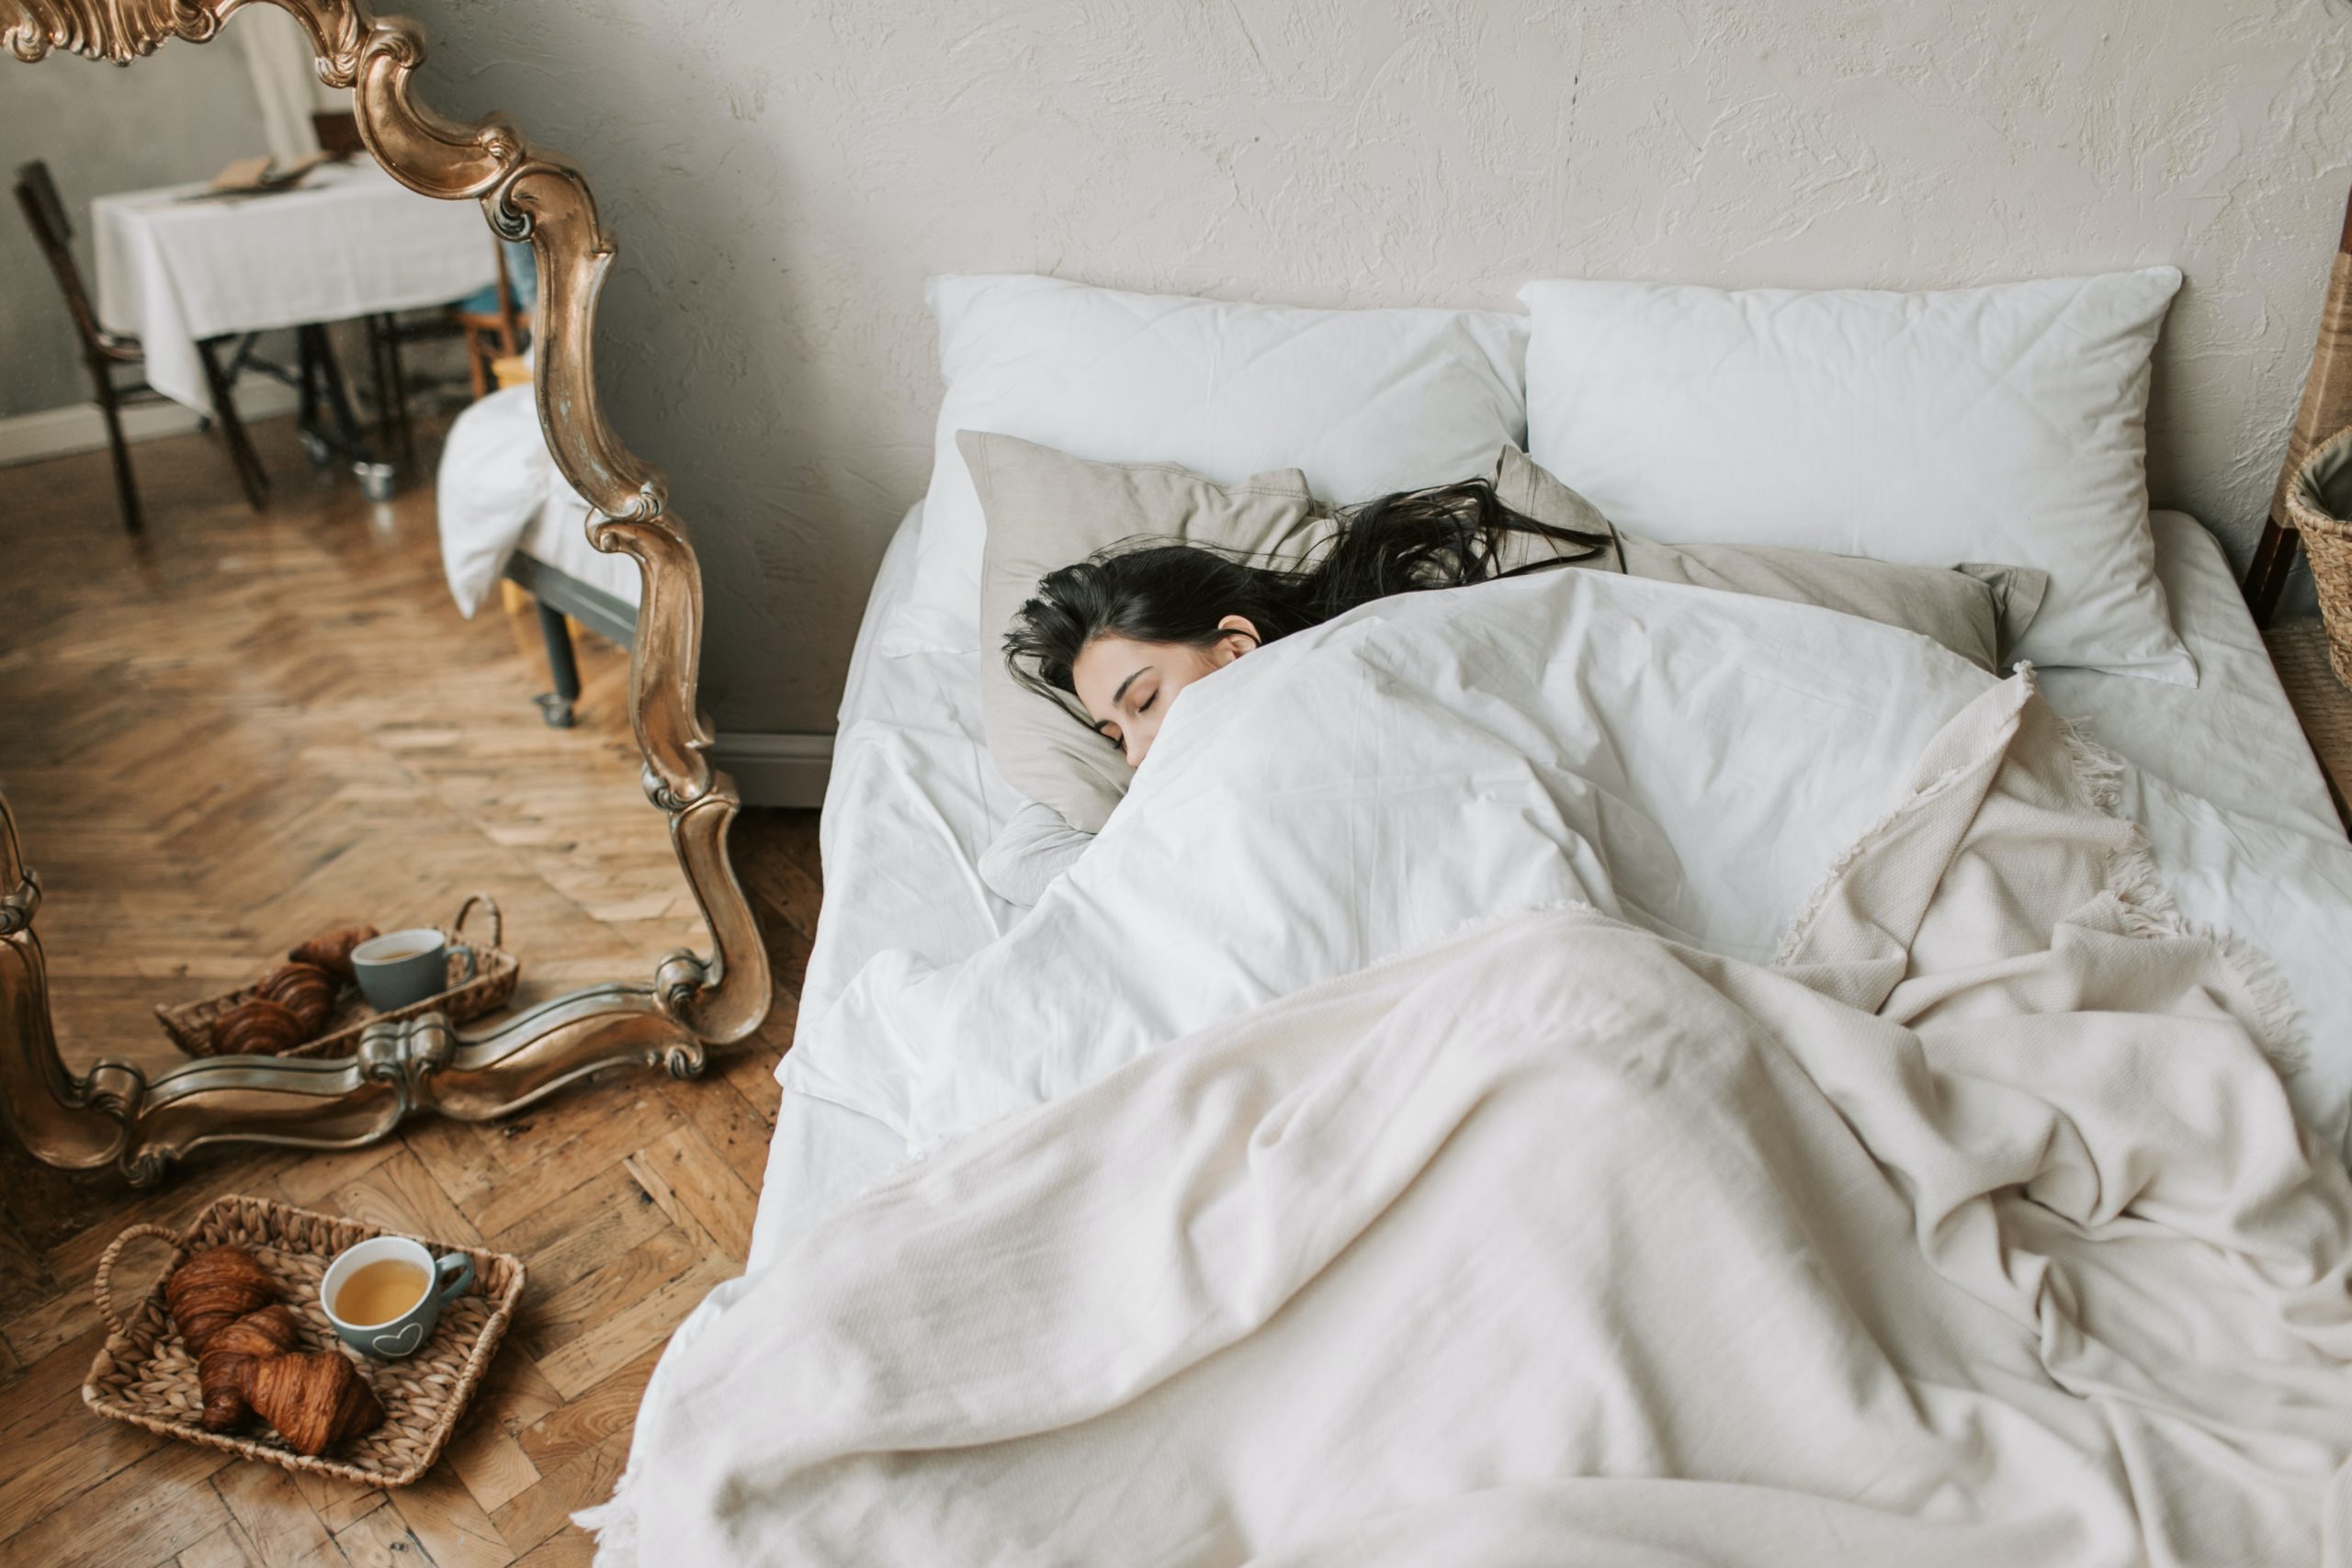 middelen om beter te slapen - slaaptips piekeren - beter slapen apps - slaaptips volwassenen - goede nachtrust tips